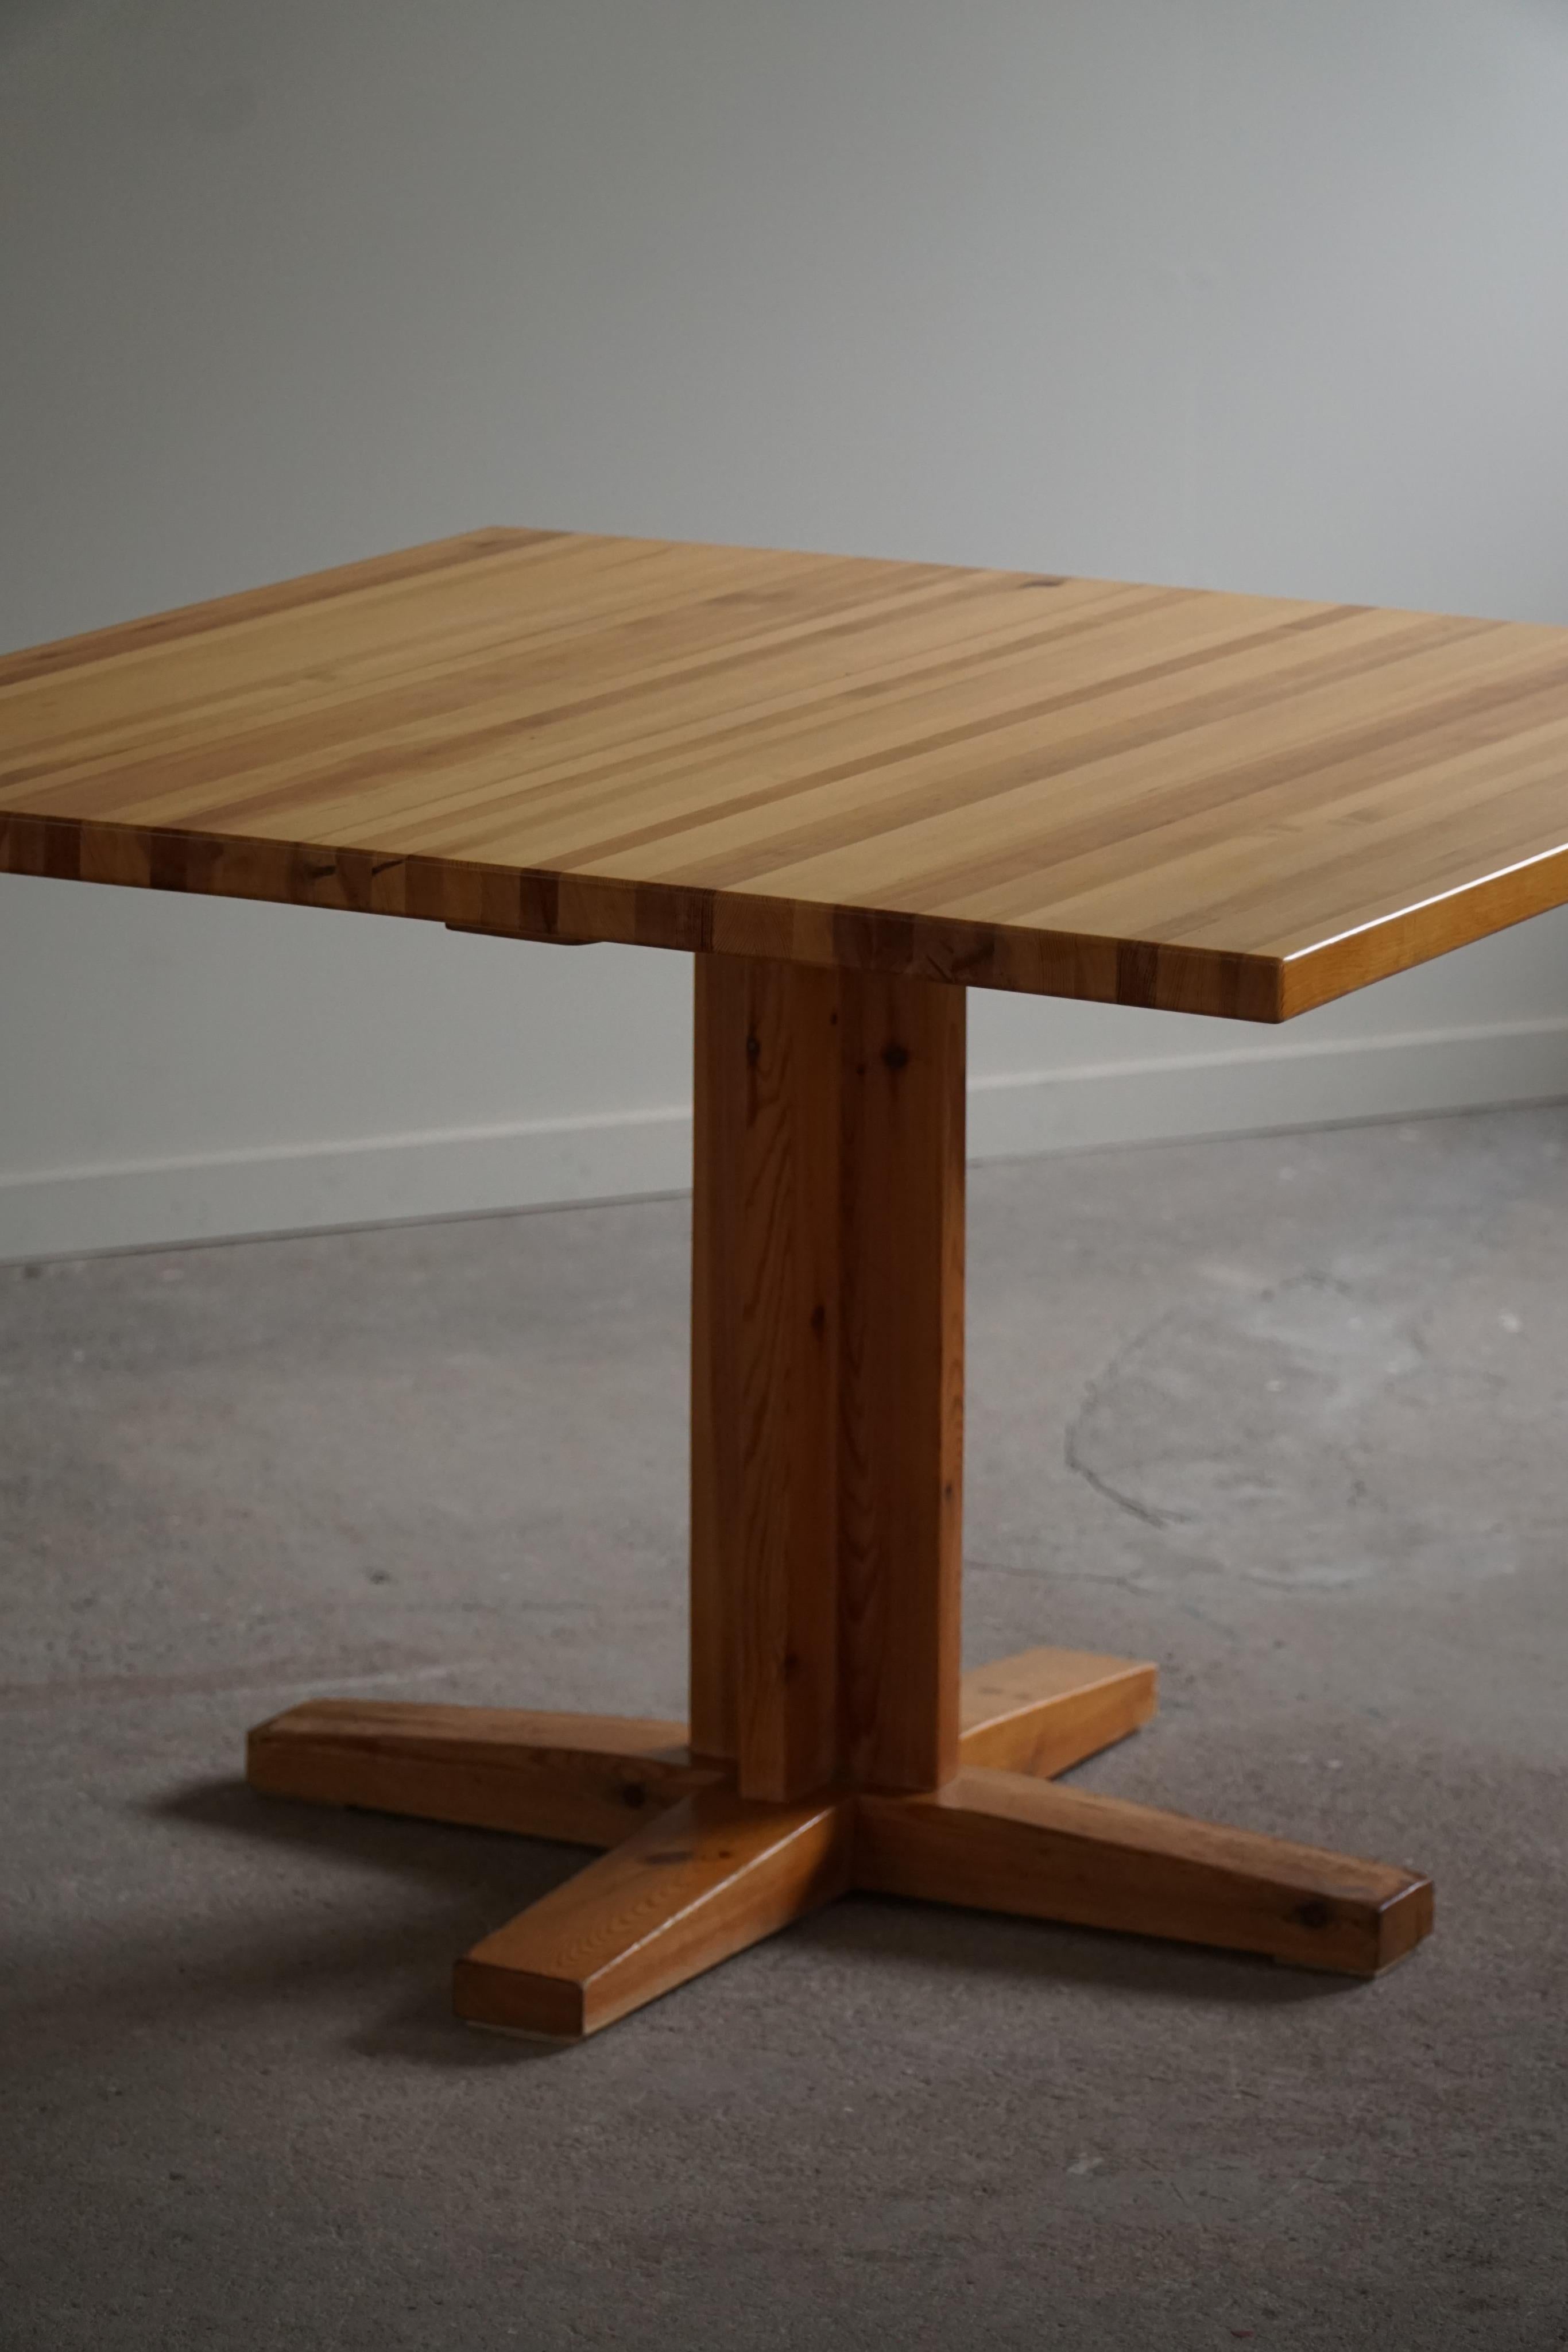 Ein schöner quadratischer Esszimmertisch aus massivem Kiefernholz. Von einem dänischen Tischler in den 1960er Jahren hergestellt. Hergestellt im Stil des Designers Rainer Daumiller. 

Dieser schöne Tisch passt zu vielen Einrichtungsstilen. Ein